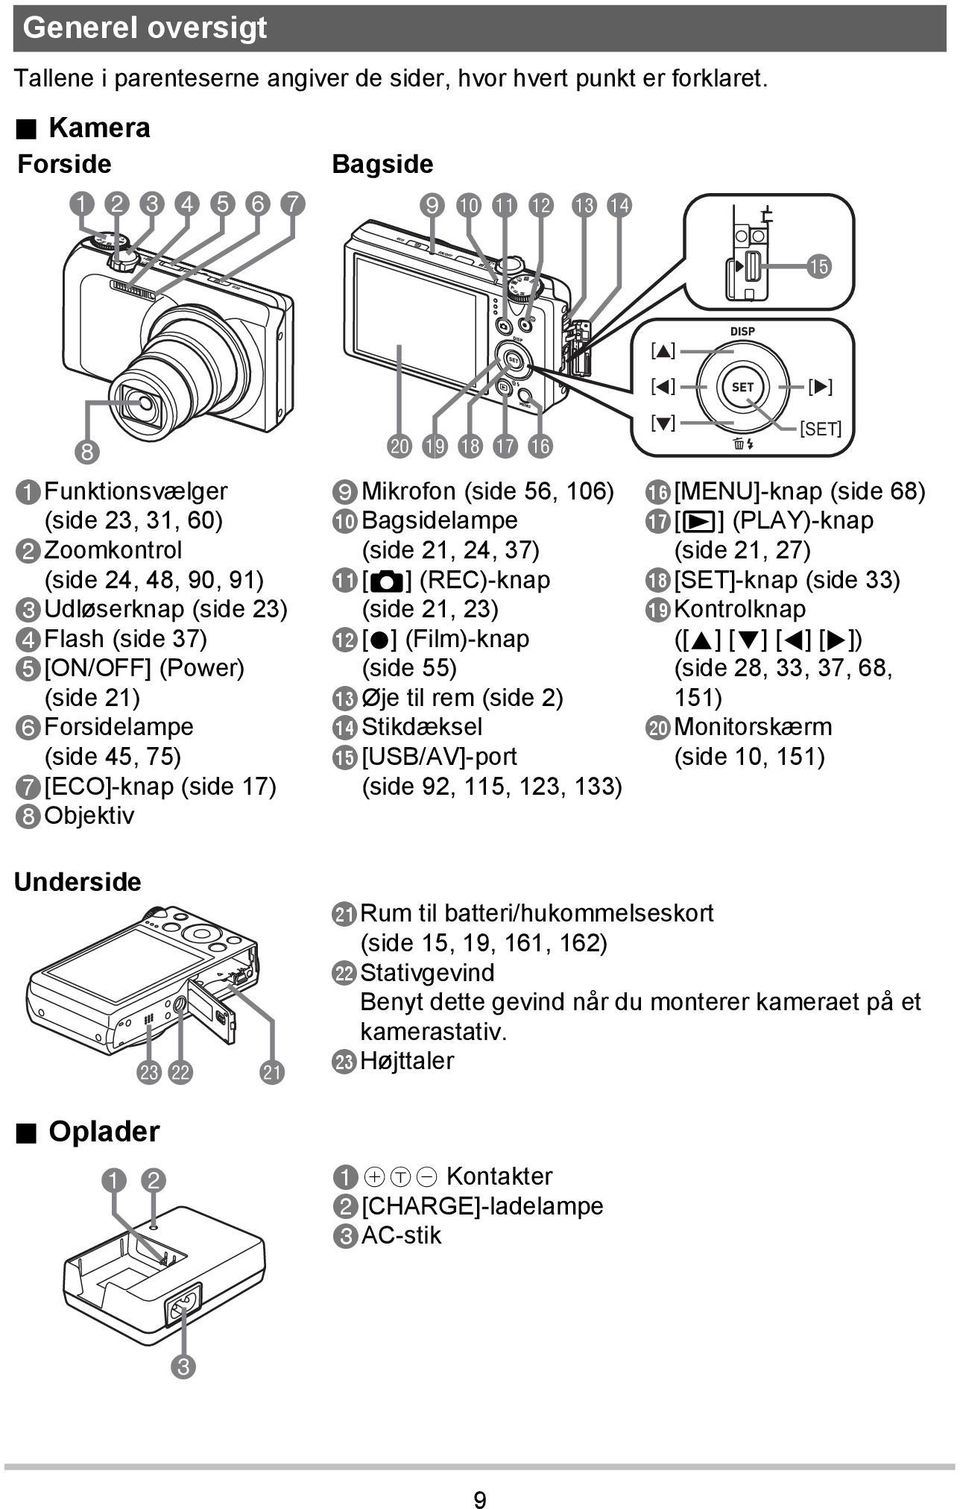 6Forsidelampe (side 45, 75) 7[ECO]-knap (side 17) 8Objektiv ck bt bs br bq 9Mikrofon (side 56, 106) bkbagsidelampe (side 21, 24, 37) bl[r] (REC)-knap (side 21, 23) bm[0] (Film)-knap (side 55) bnøje